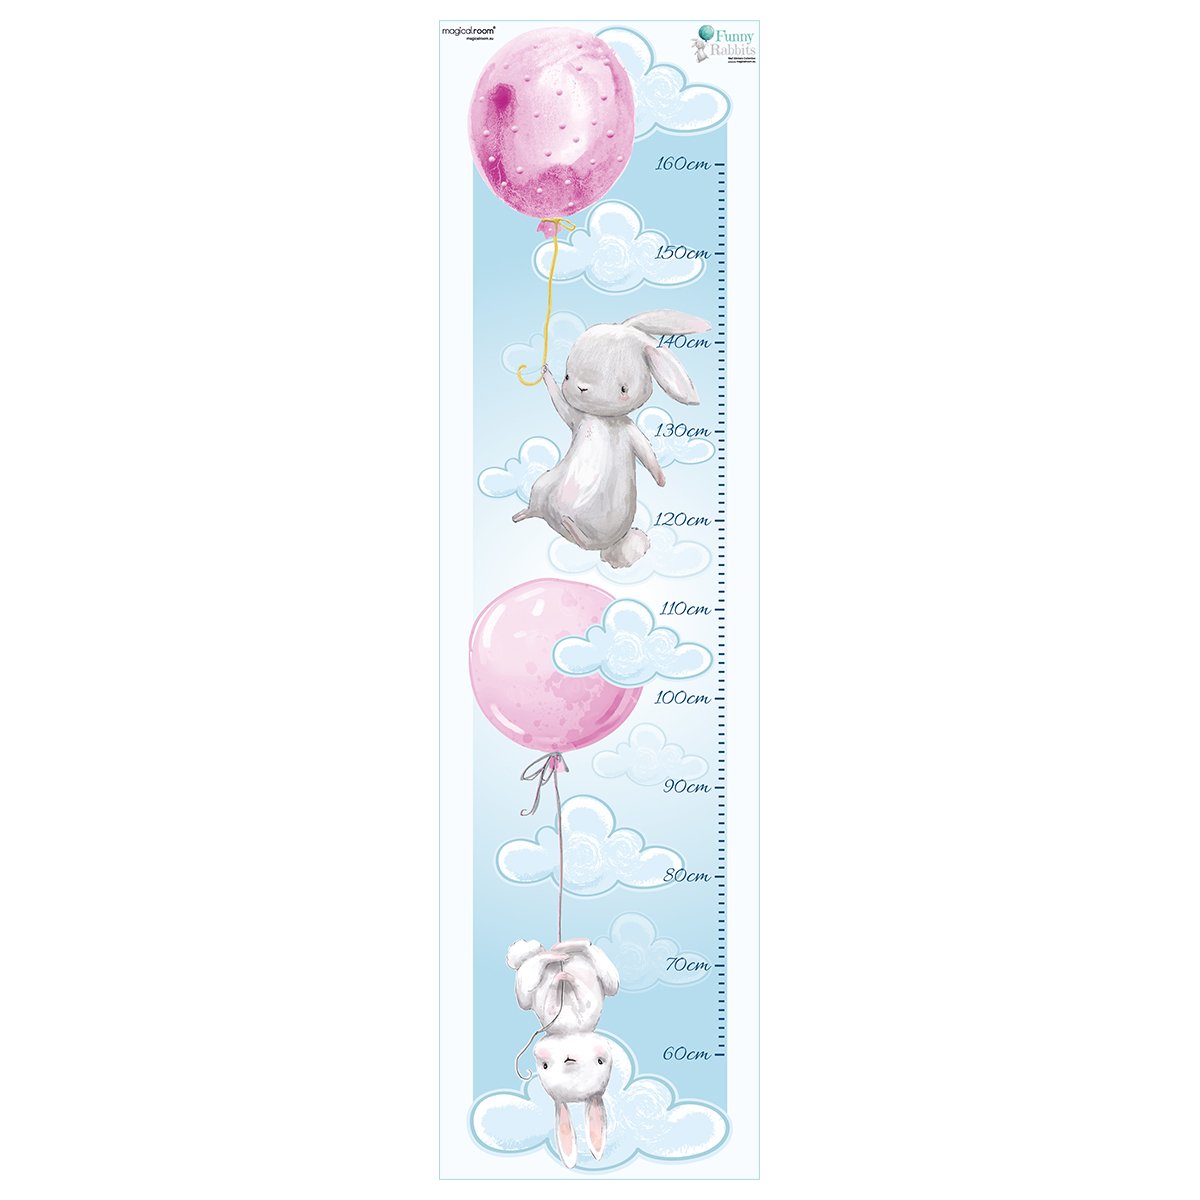 Naklejka na ścianę miarka wzrostu - króliki i różowe baloniki#kolor_rozowy